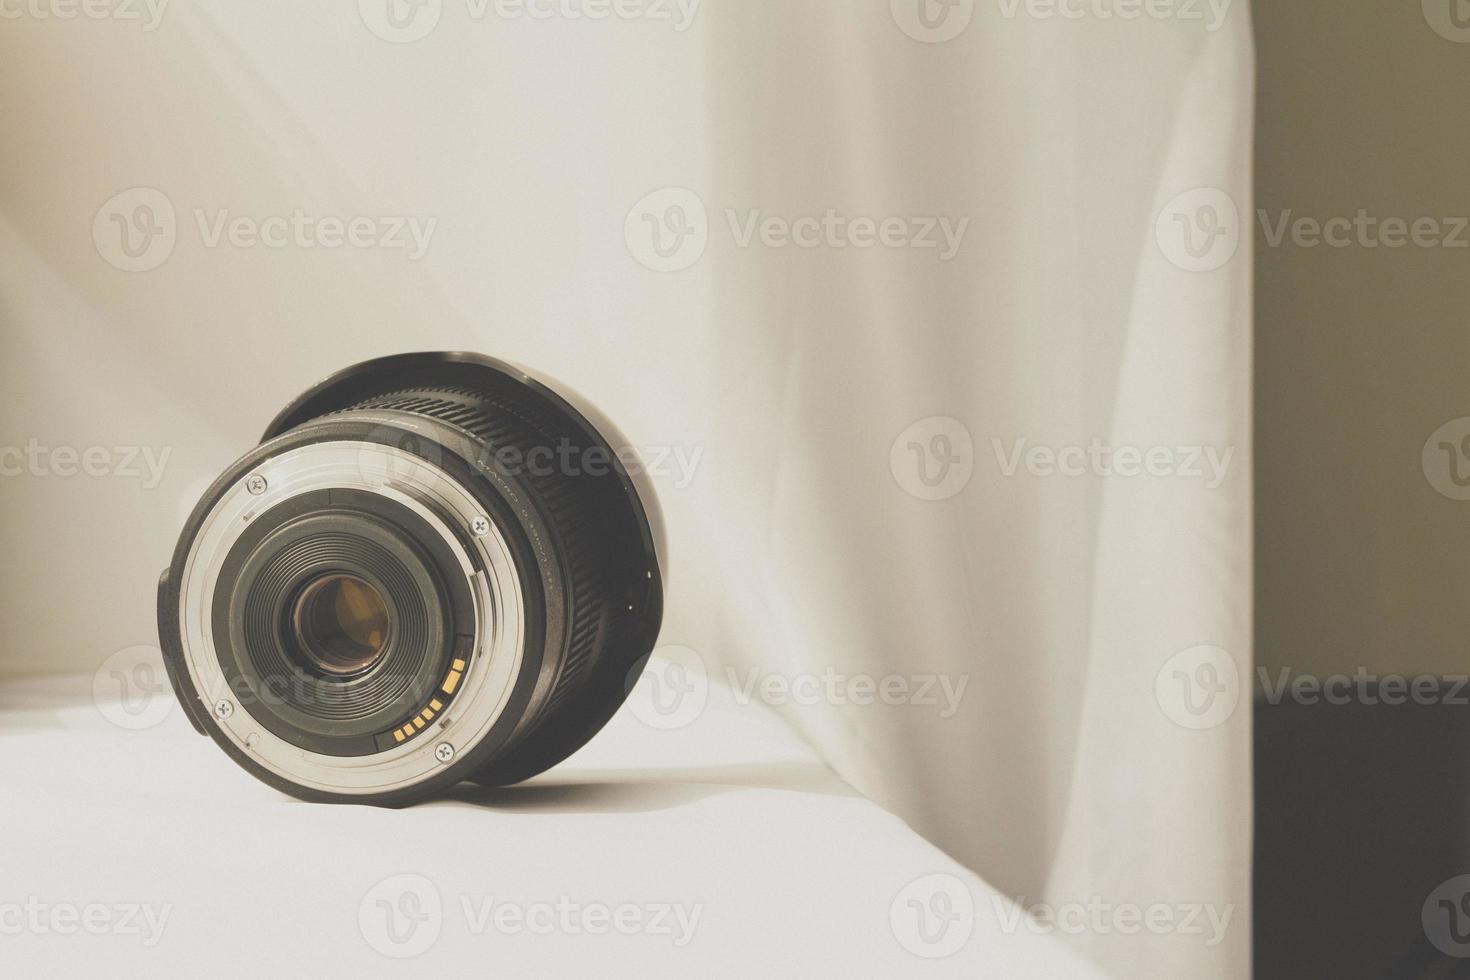 obiettivo zoom della fotocamera nero su panno bianco foto